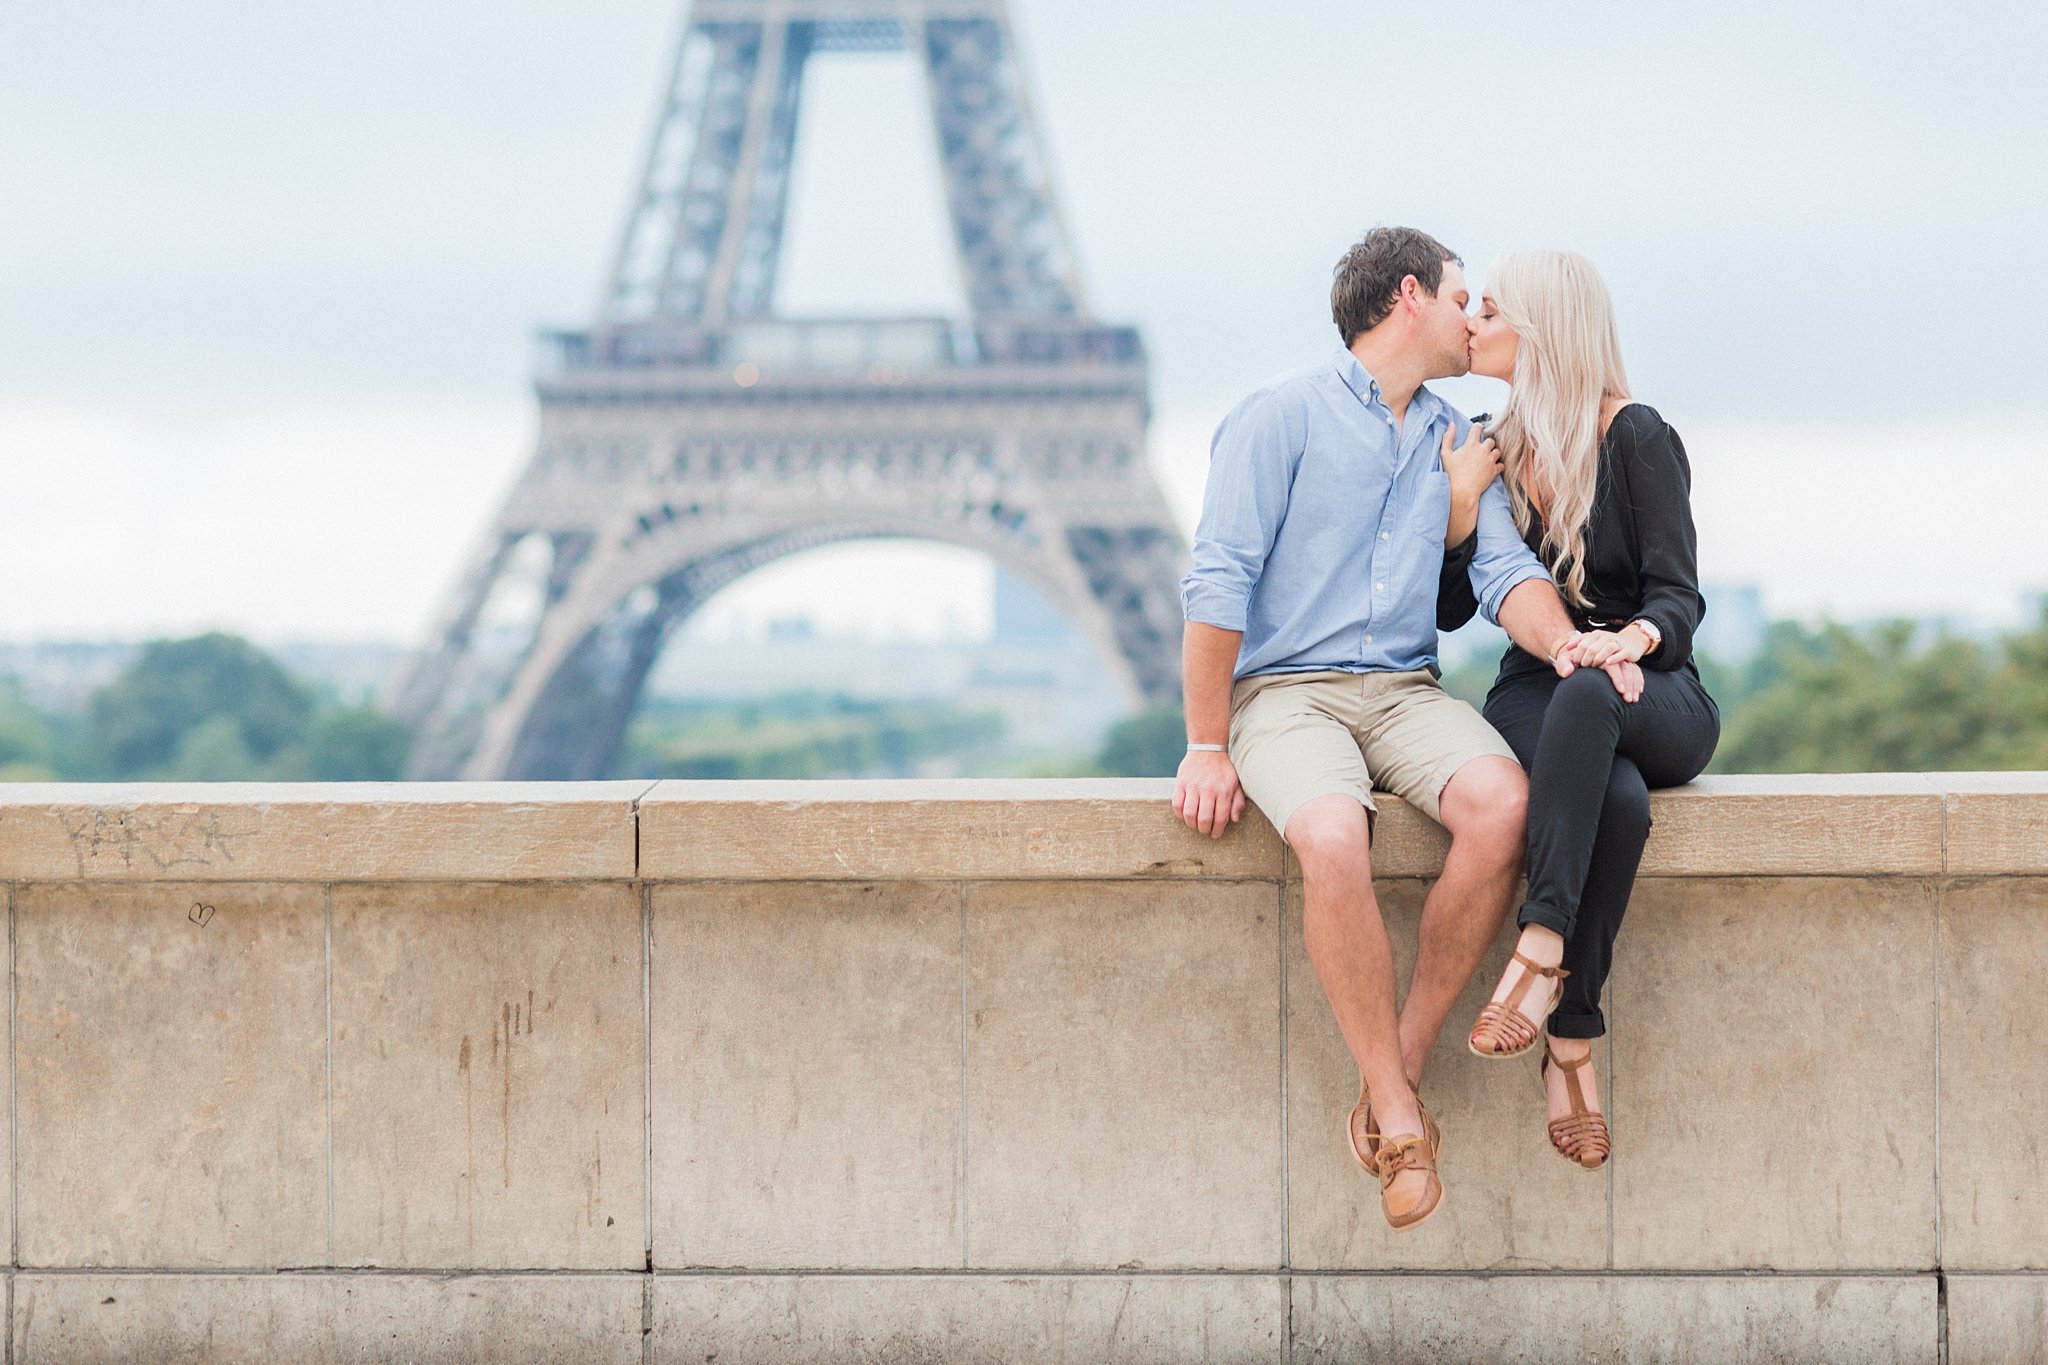 Surprise proposal Paris photographer engagement shoot natural light film fine art France love session Eiffel Tower